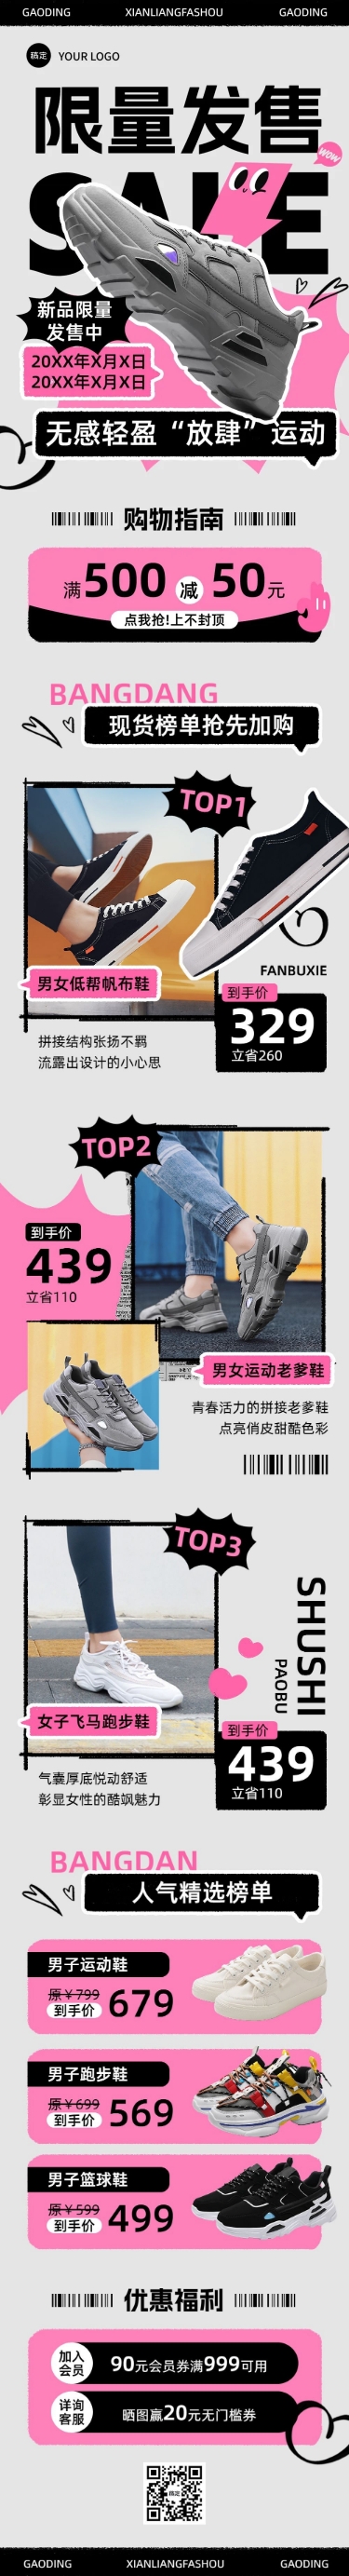 鞋服箱包商品促销宣传微信公众号文章长图